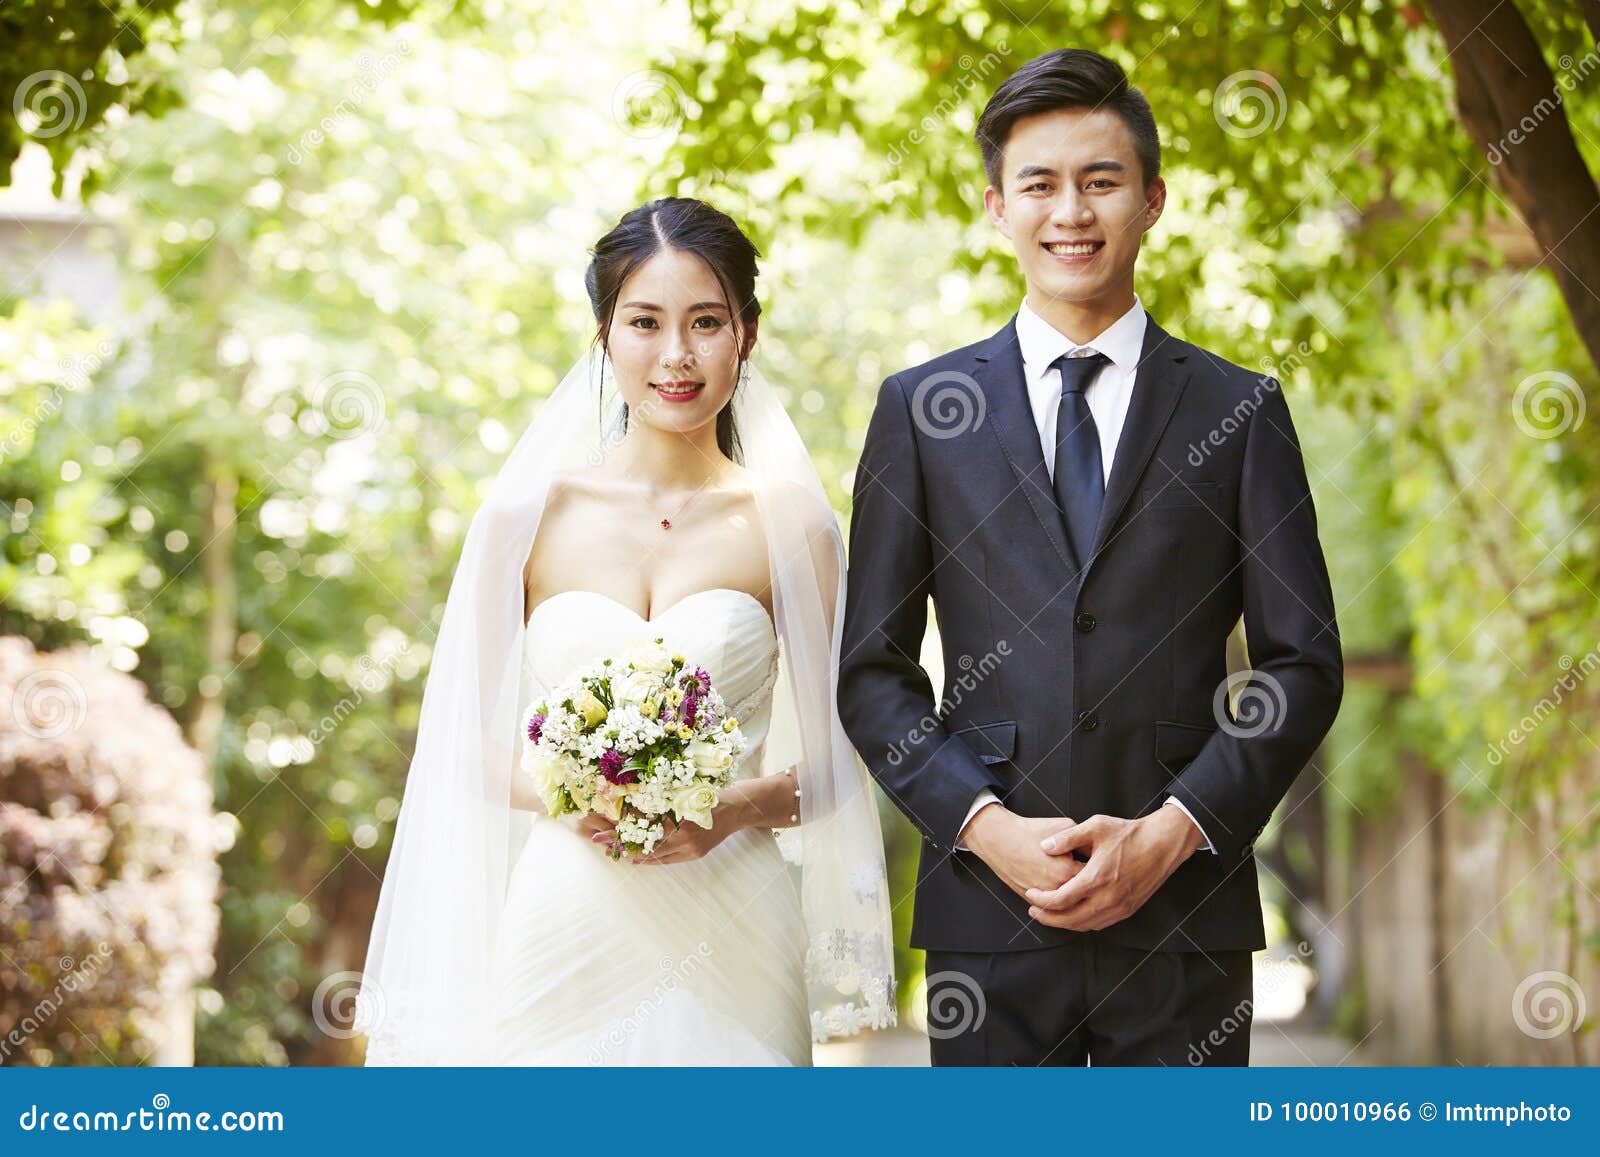 couple outdoor asian Virgin